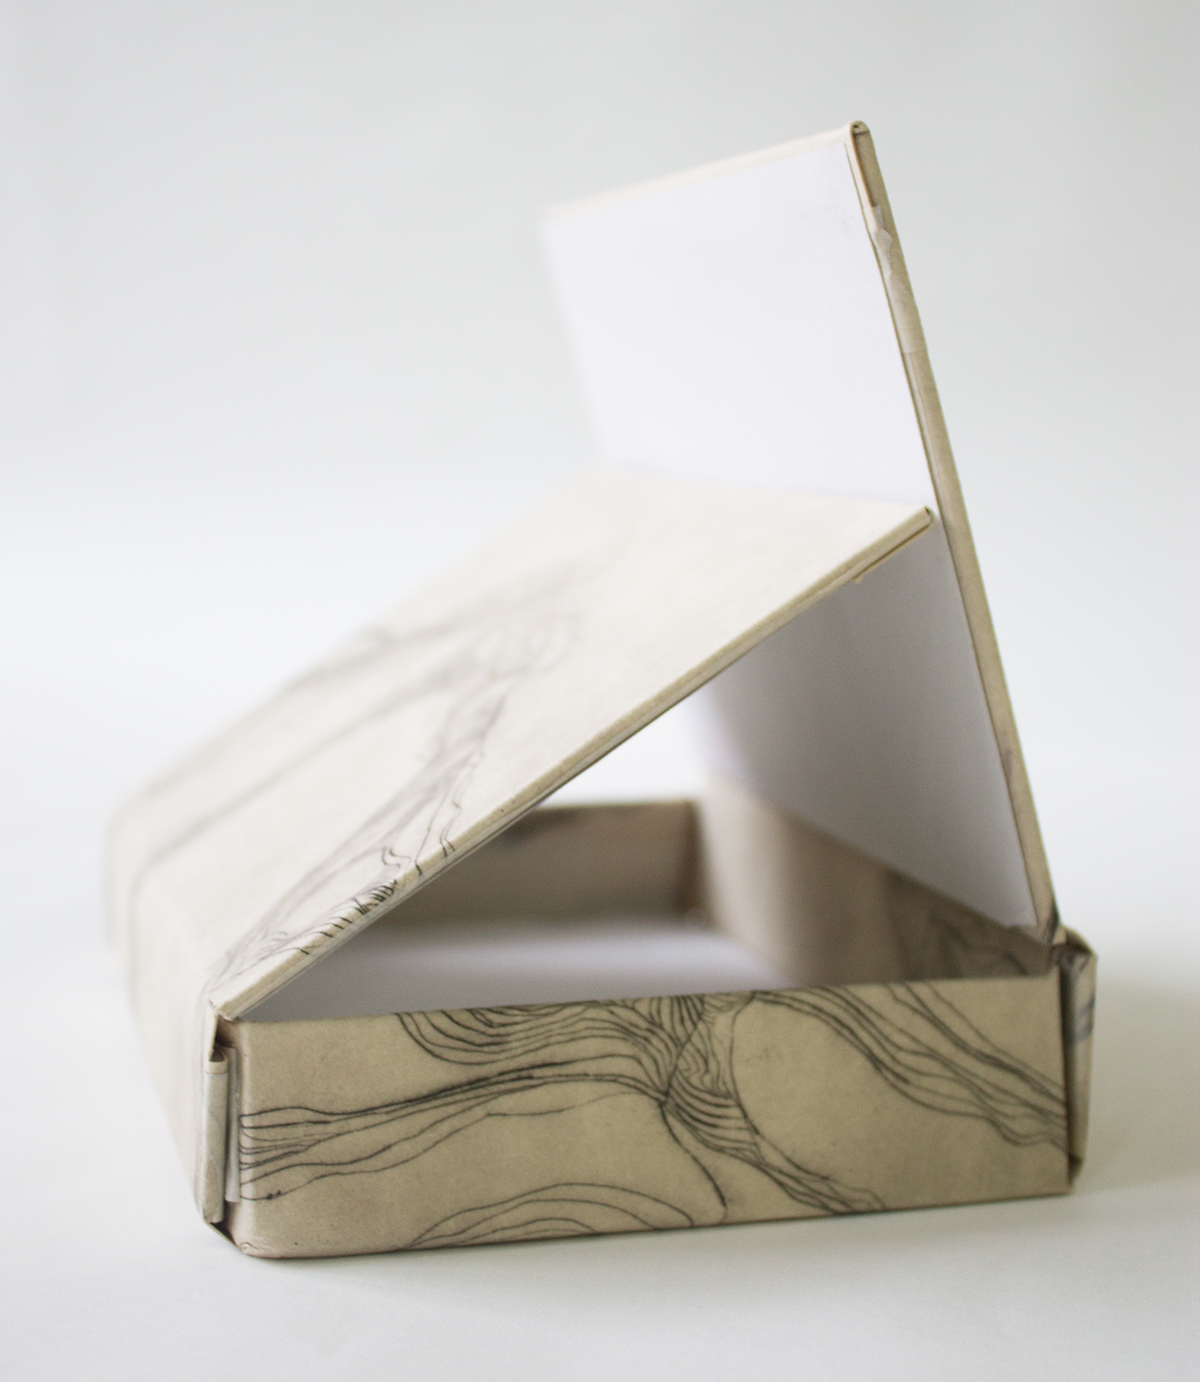 Bookbinding maquete model handmade handcraft craft artist's book encadernação book design Production